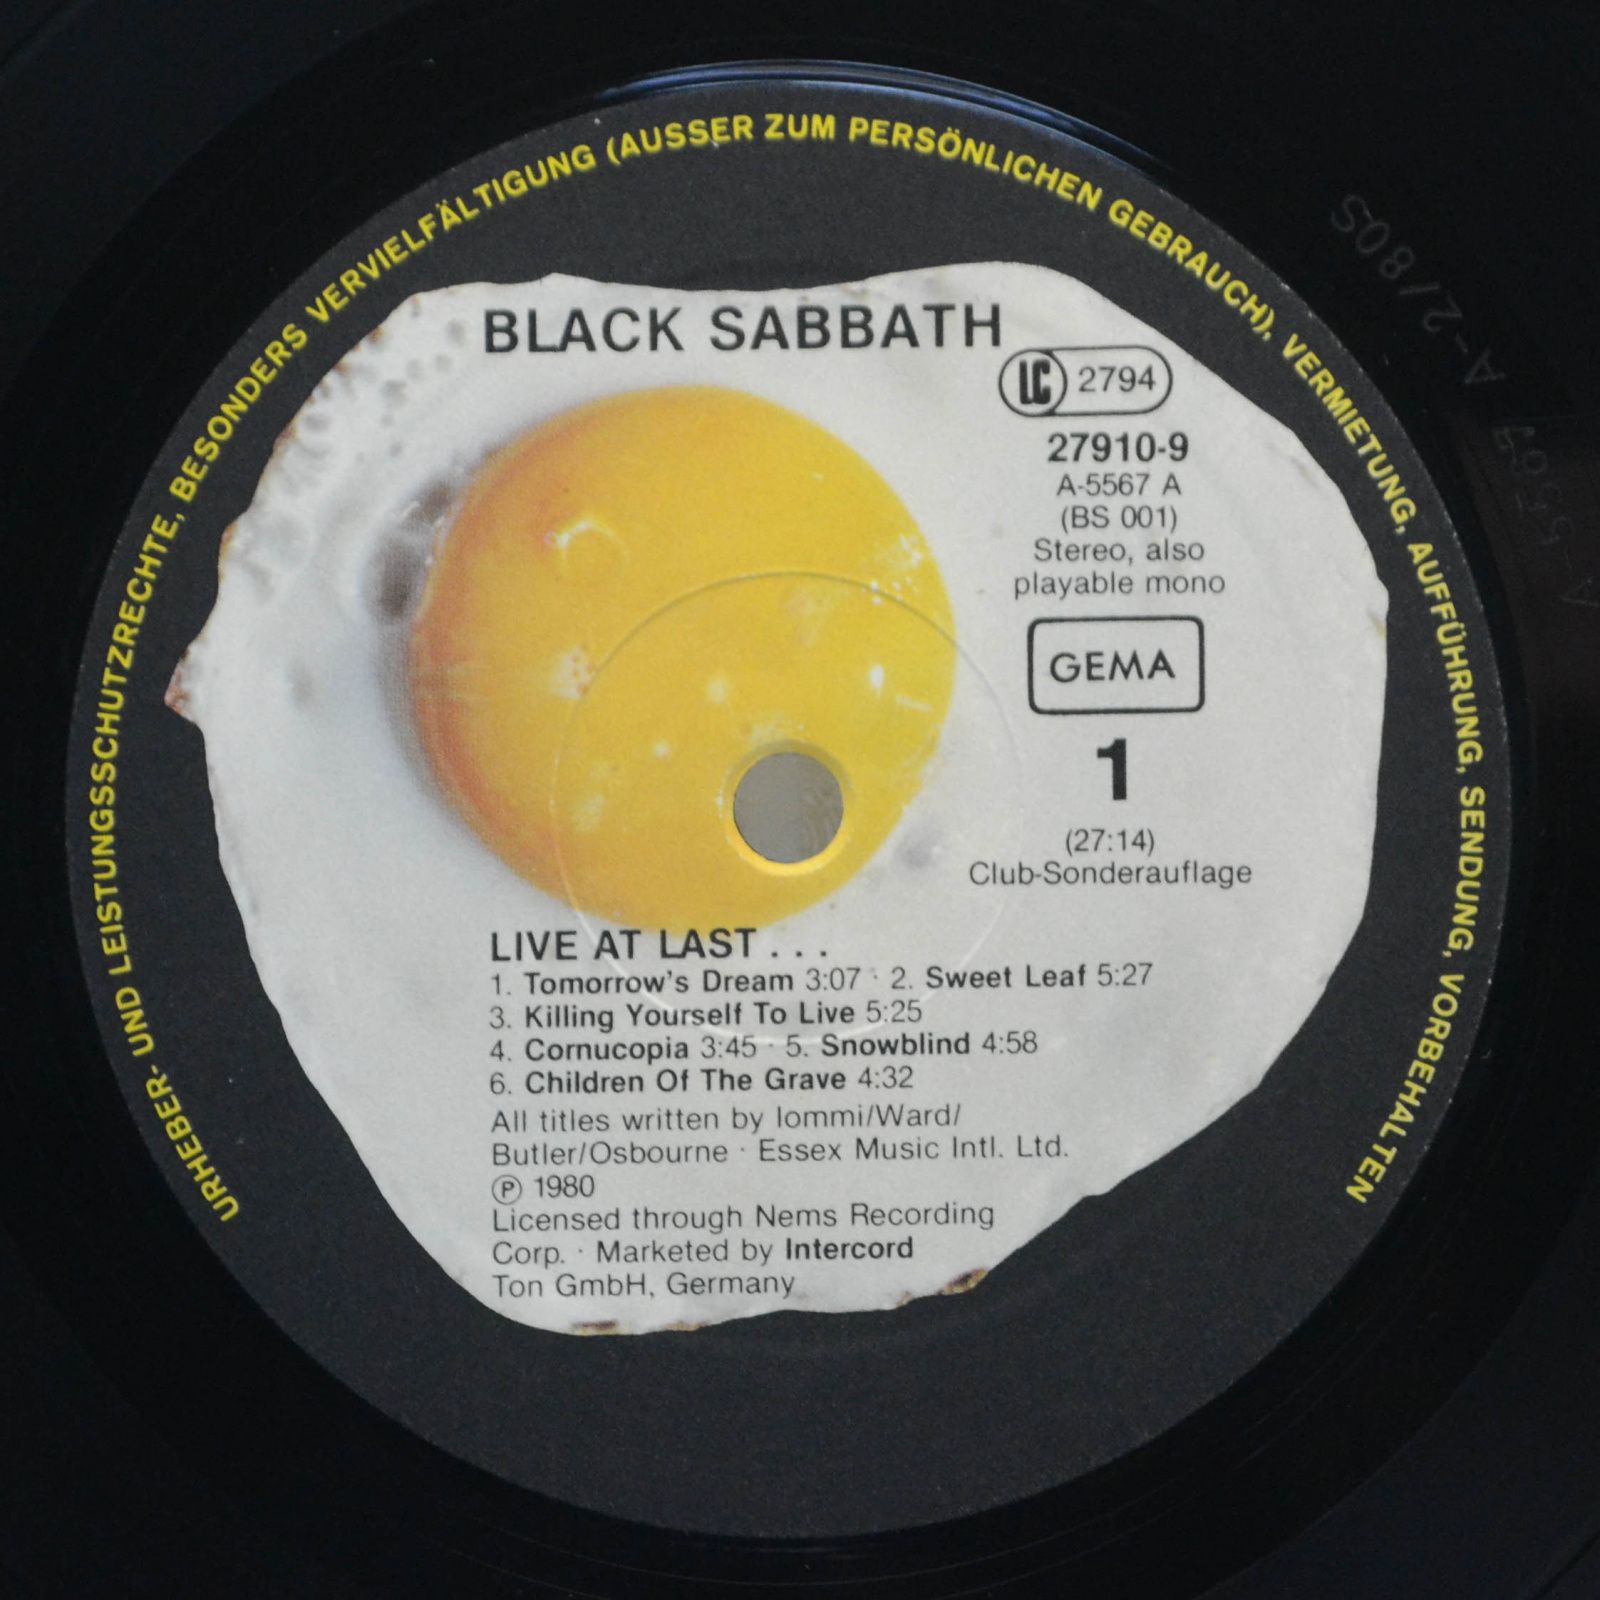 Black Sabbath — Live At Last..., 1980